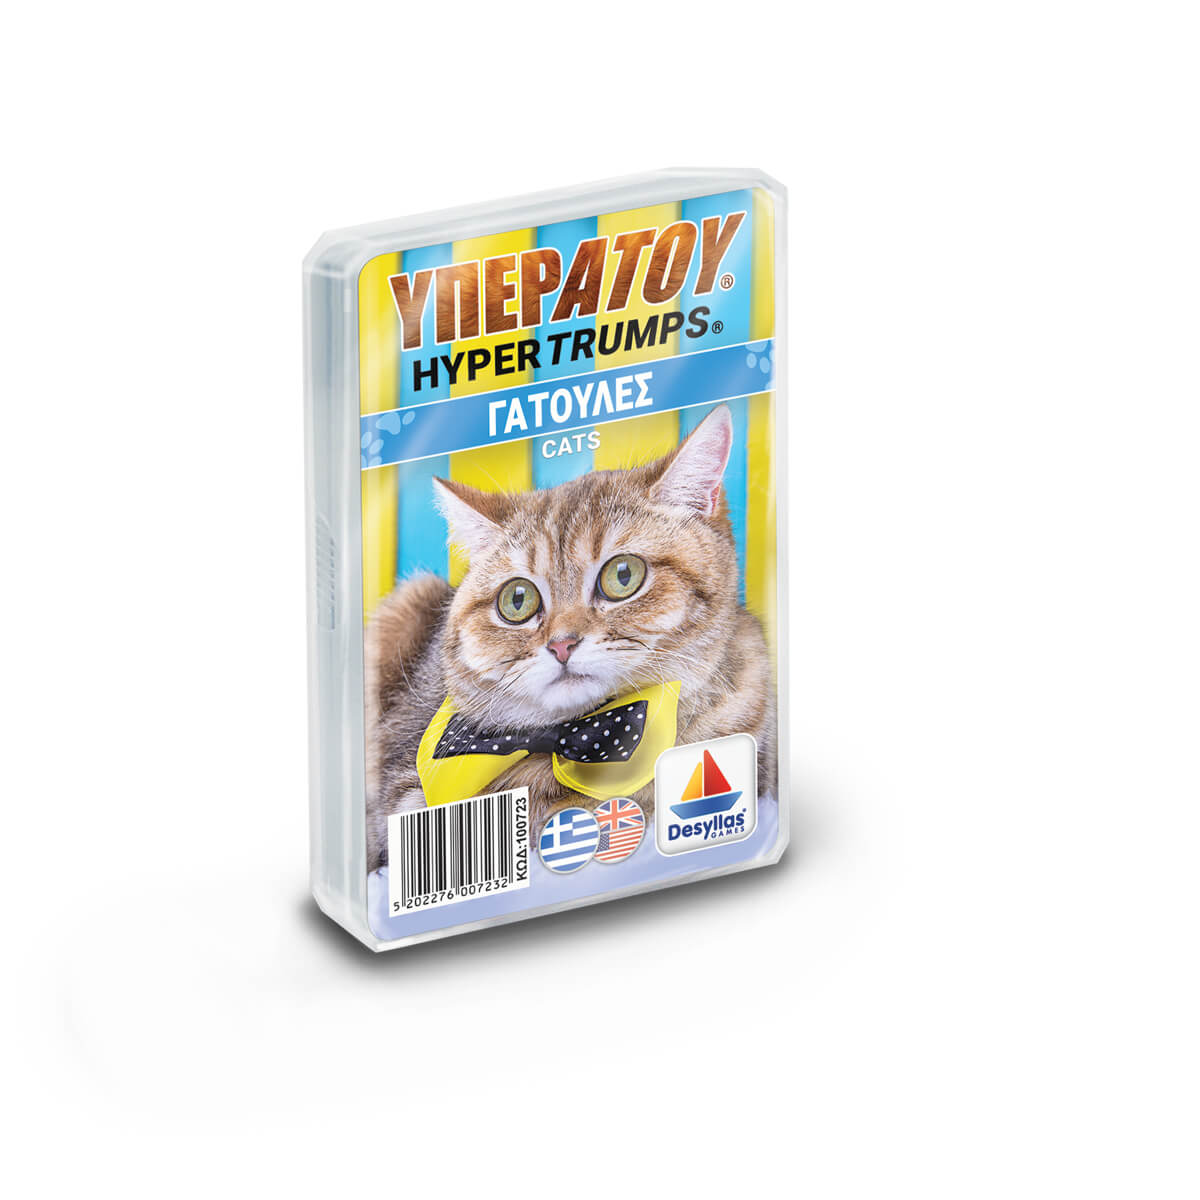 ΠΑΙΔΙ | Παιχνίδια | Επιτραπέζια - Παζλ - Βιβλία - Χειροτεχνίες | ΕΠΙΤΡΑΠΕΖΙΑ Display Υπερατου:100723 Γάτες (12 Τεμ)